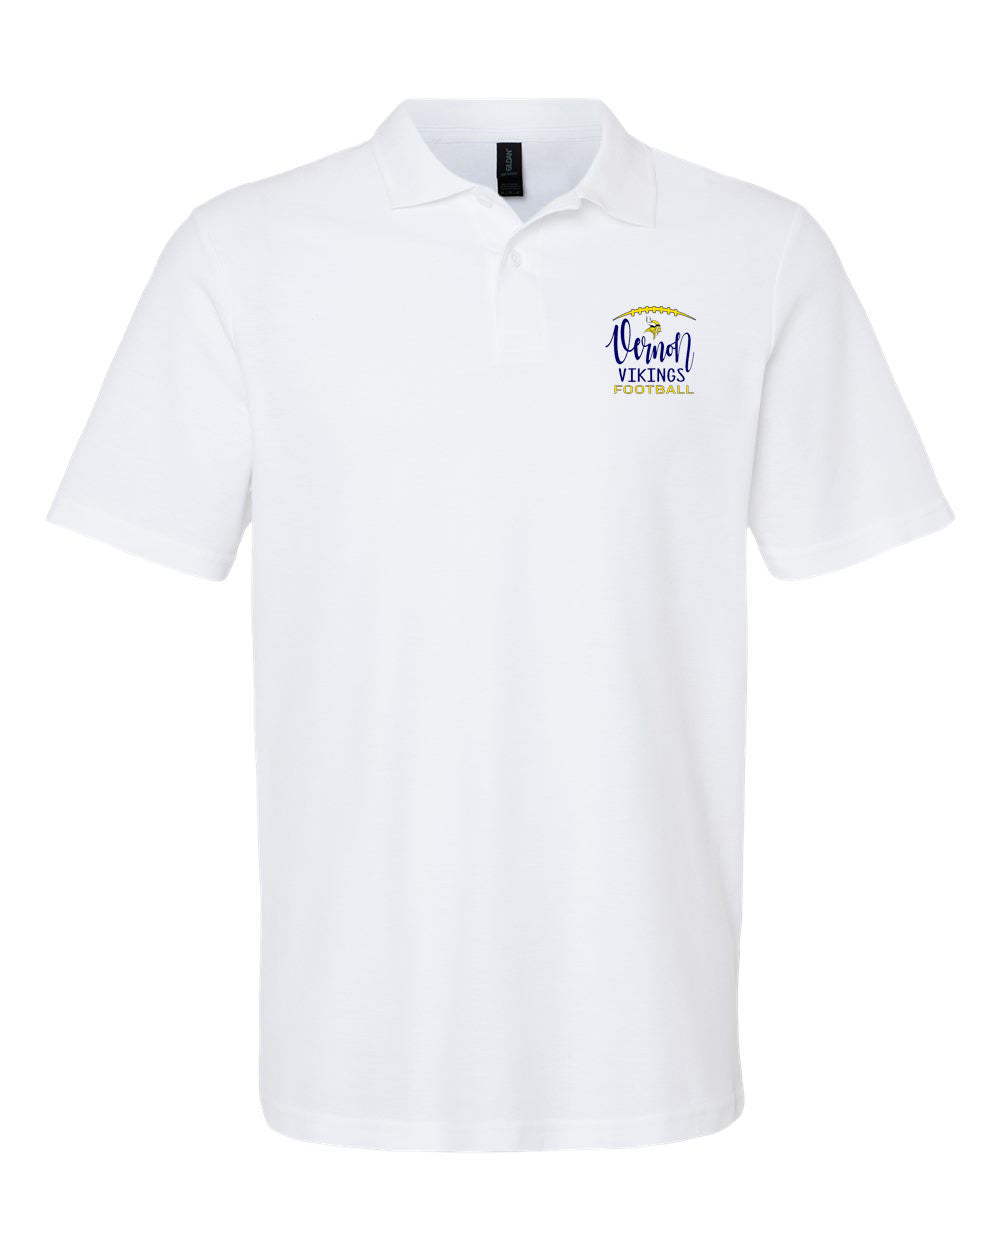 Vernon Football Design 4 Polo T-Shirt